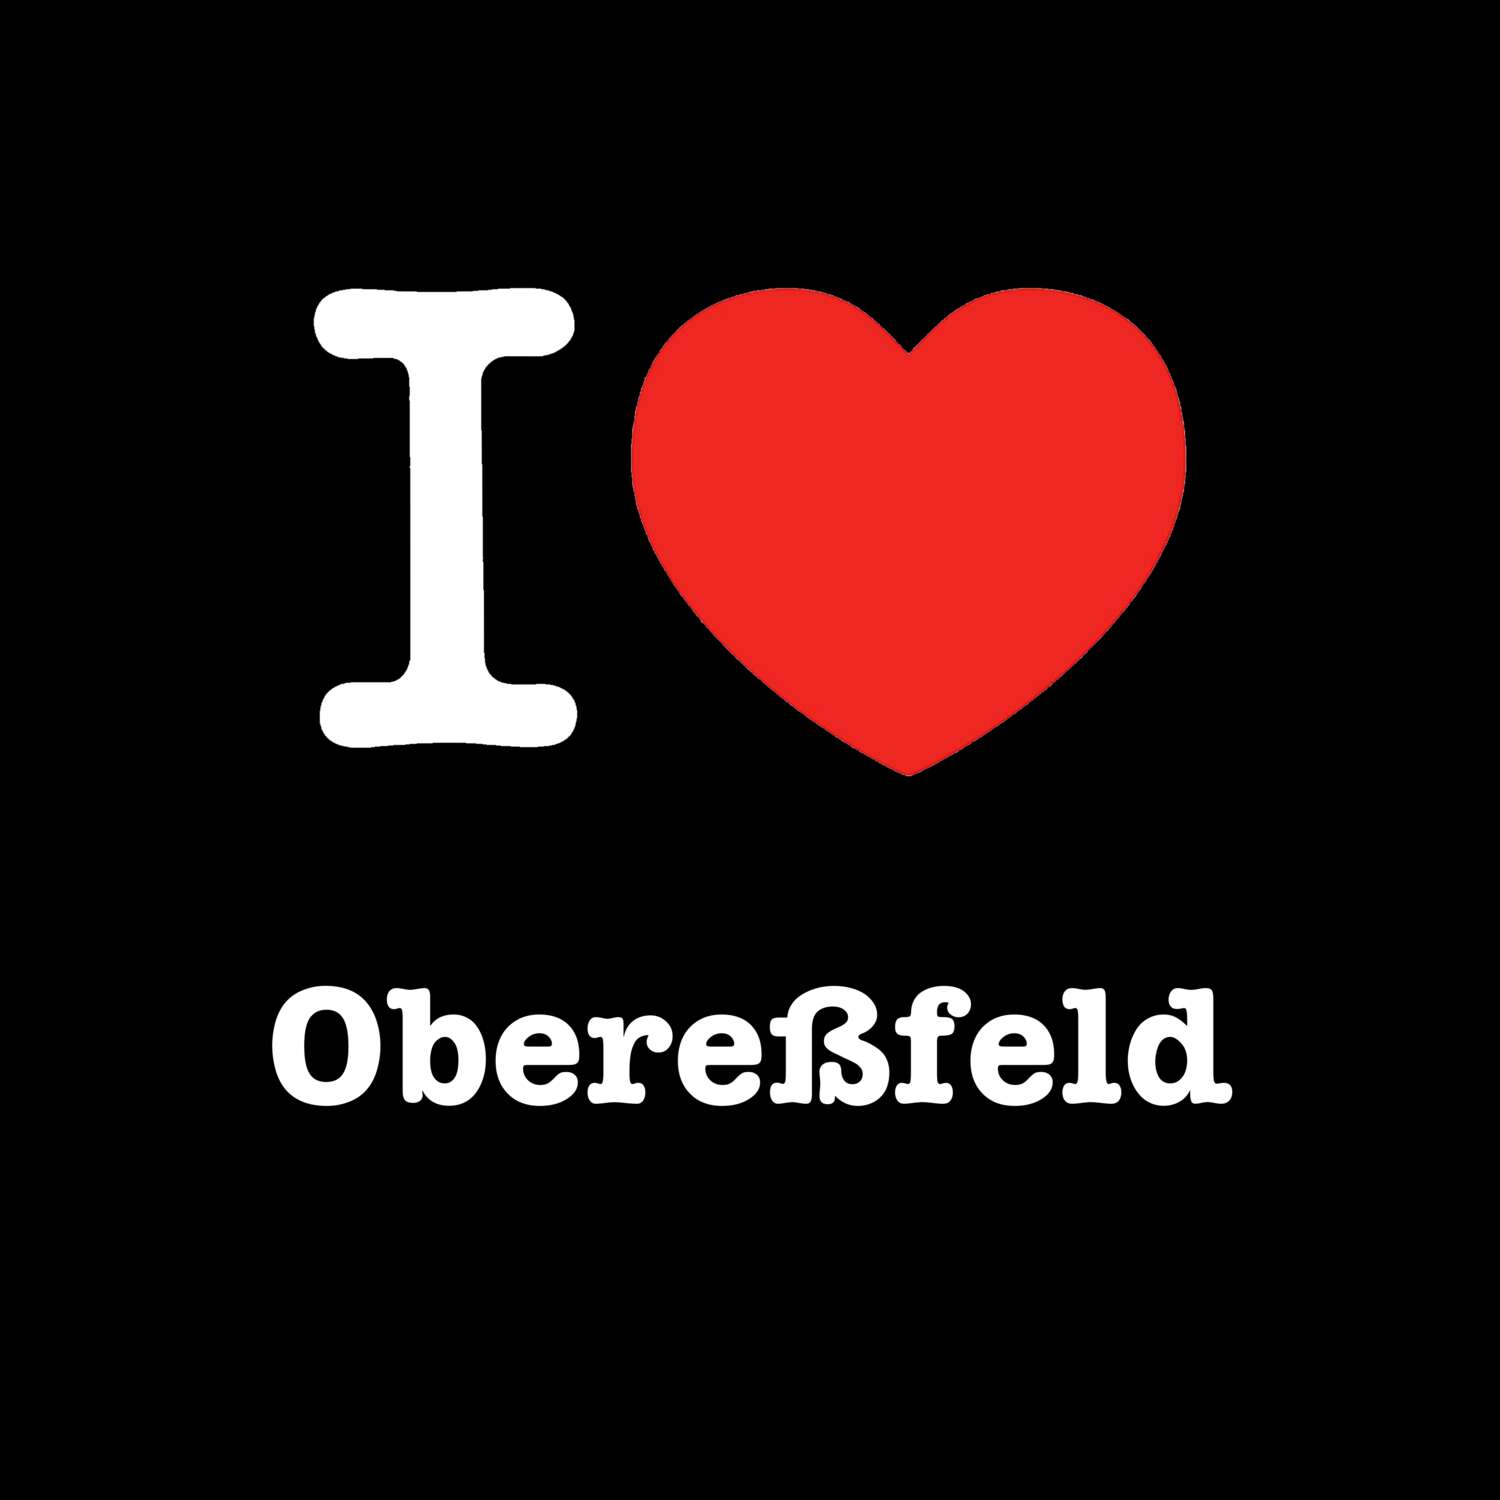 Obereßfeld T-Shirt »I love«